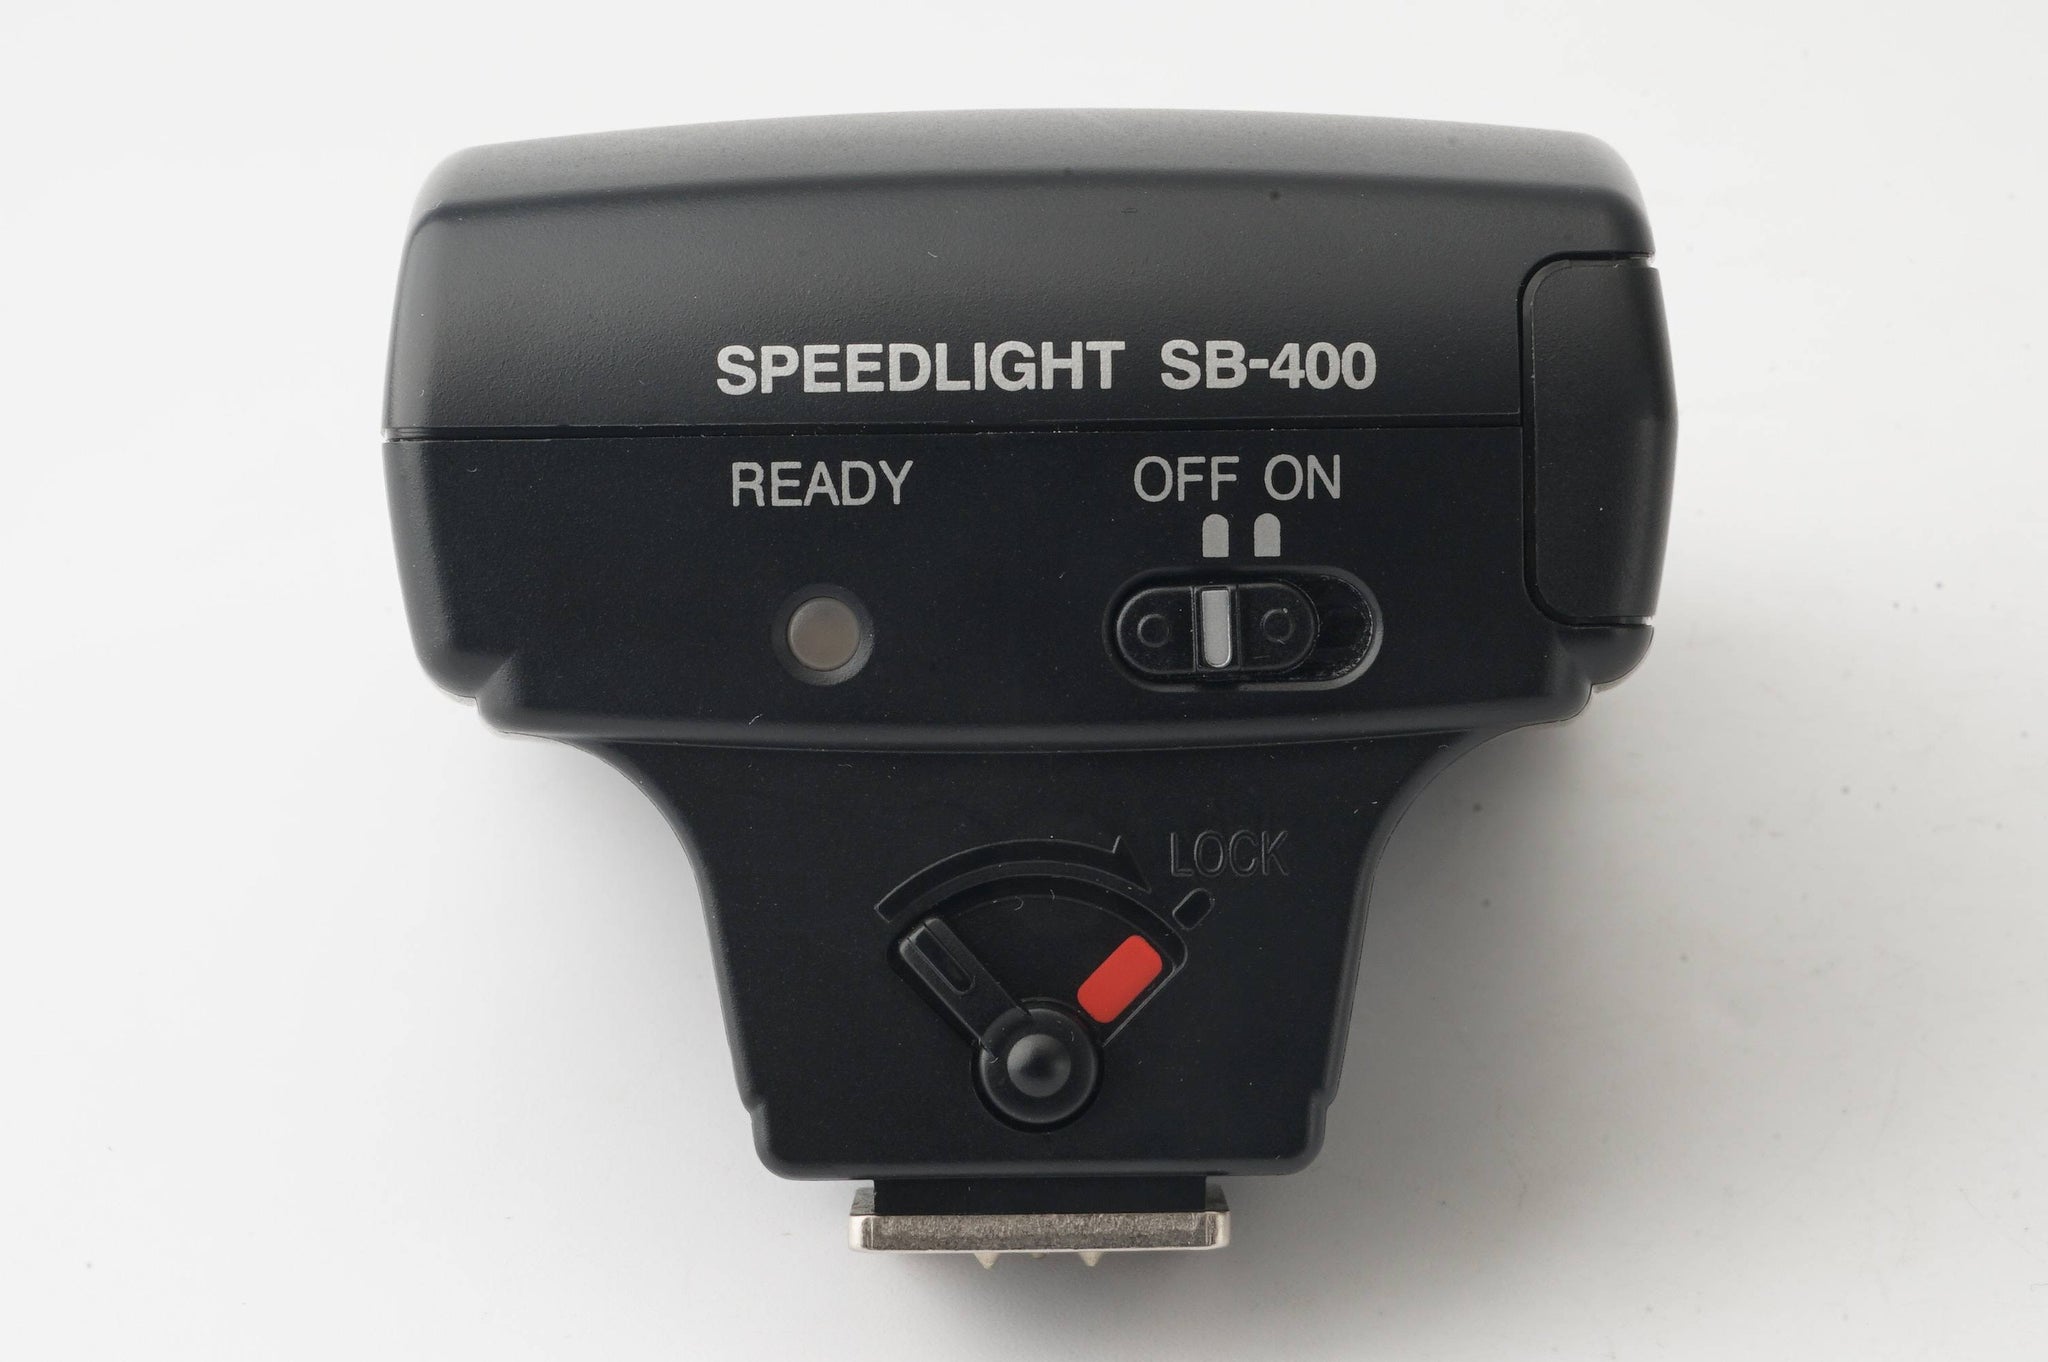 ニコン Nikon Speedlight スピードライト SB-400 – Natural Camera